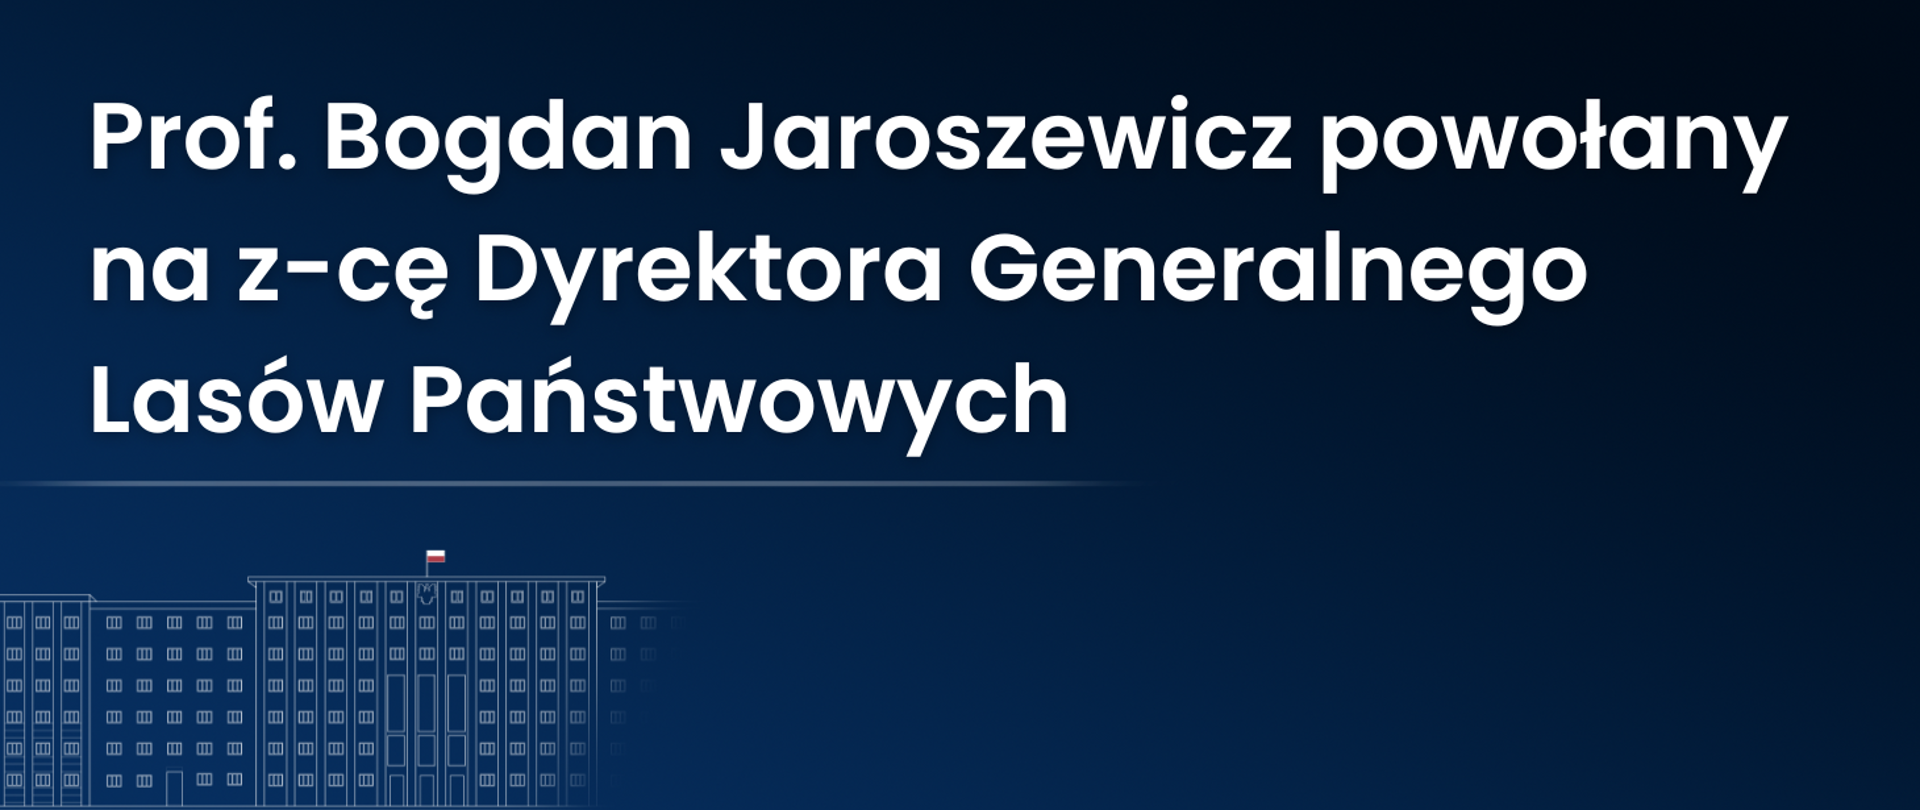 Prof. Bogdan Jaroszewicz powołany na z-cę Dyrektora Generalnego Lasów Państwowych